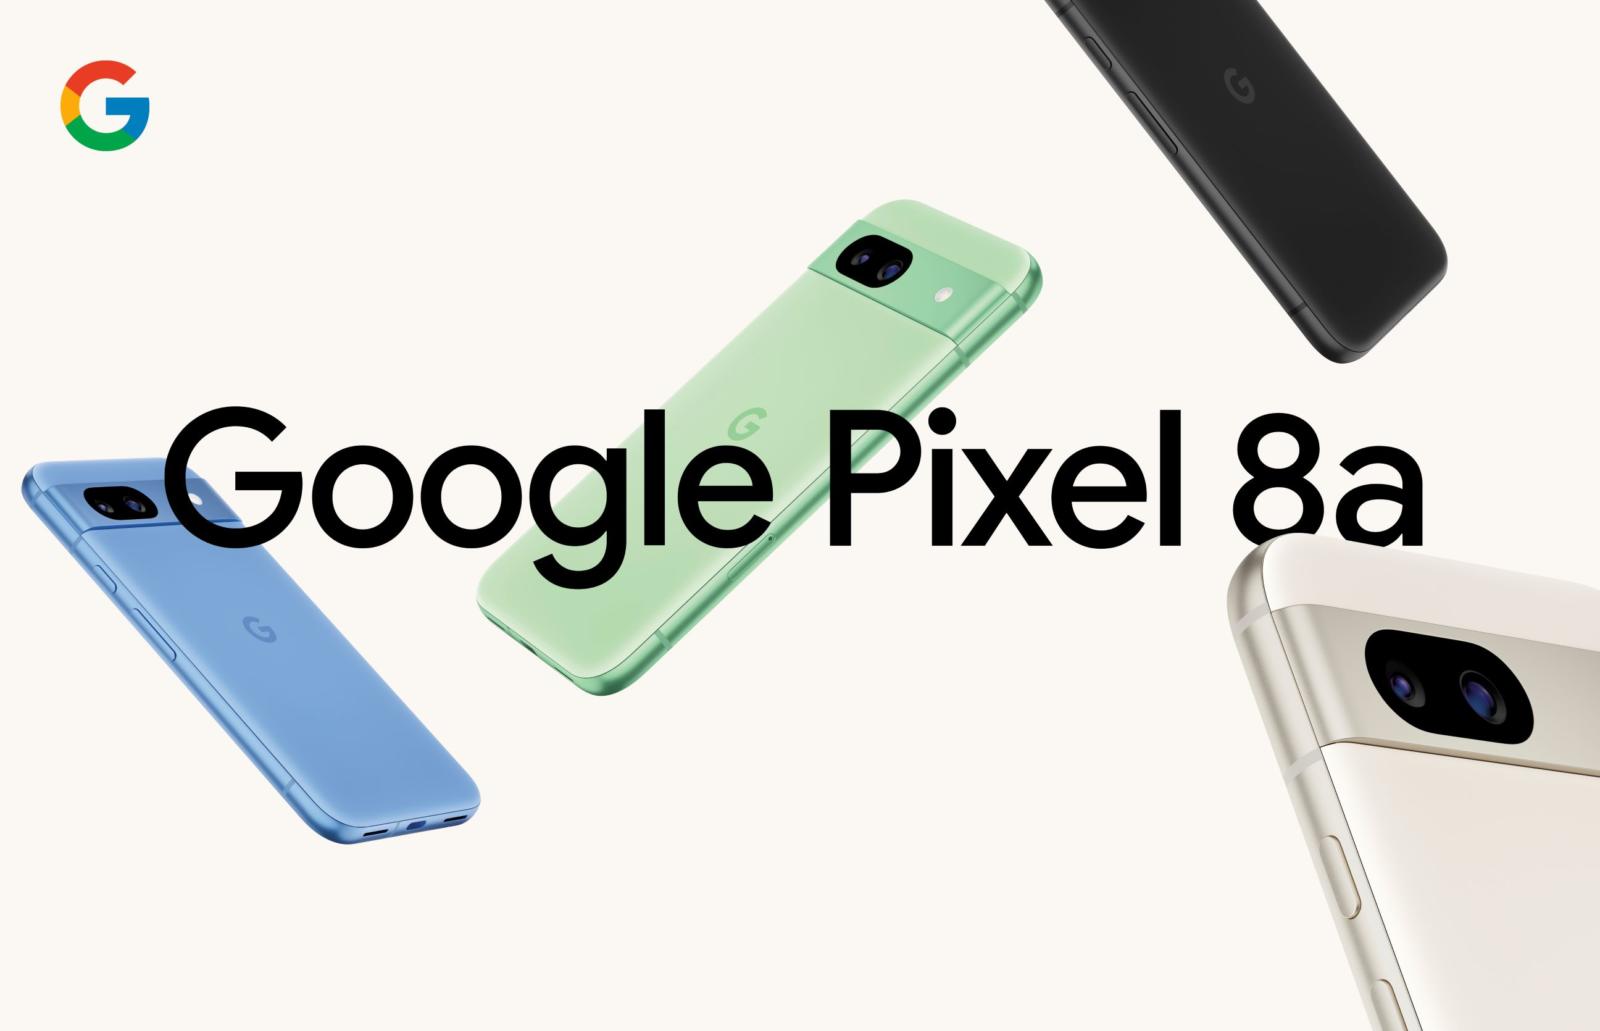 Smartfony Google Pixel oficjalnie w Polsce